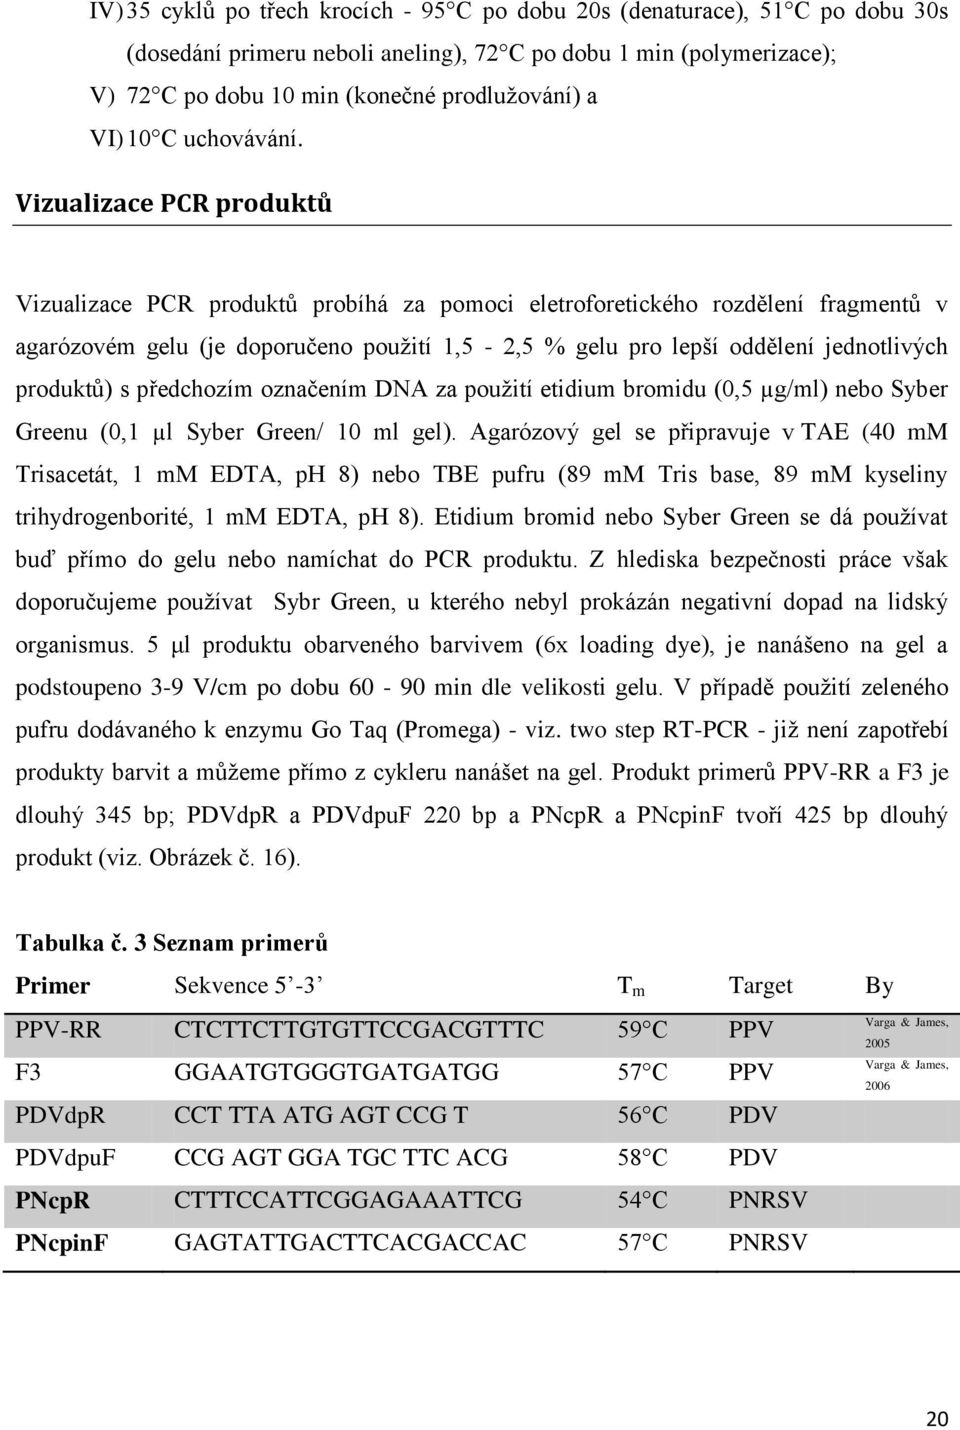 Vizualizace PCR produktů Vizualizace PCR produktů probíhá za pomoci eletroforetického rozdělení fragmentů v agarózovém gelu (je doporučeno použití 1,5-2,5 % gelu pro lepší oddělení jednotlivých